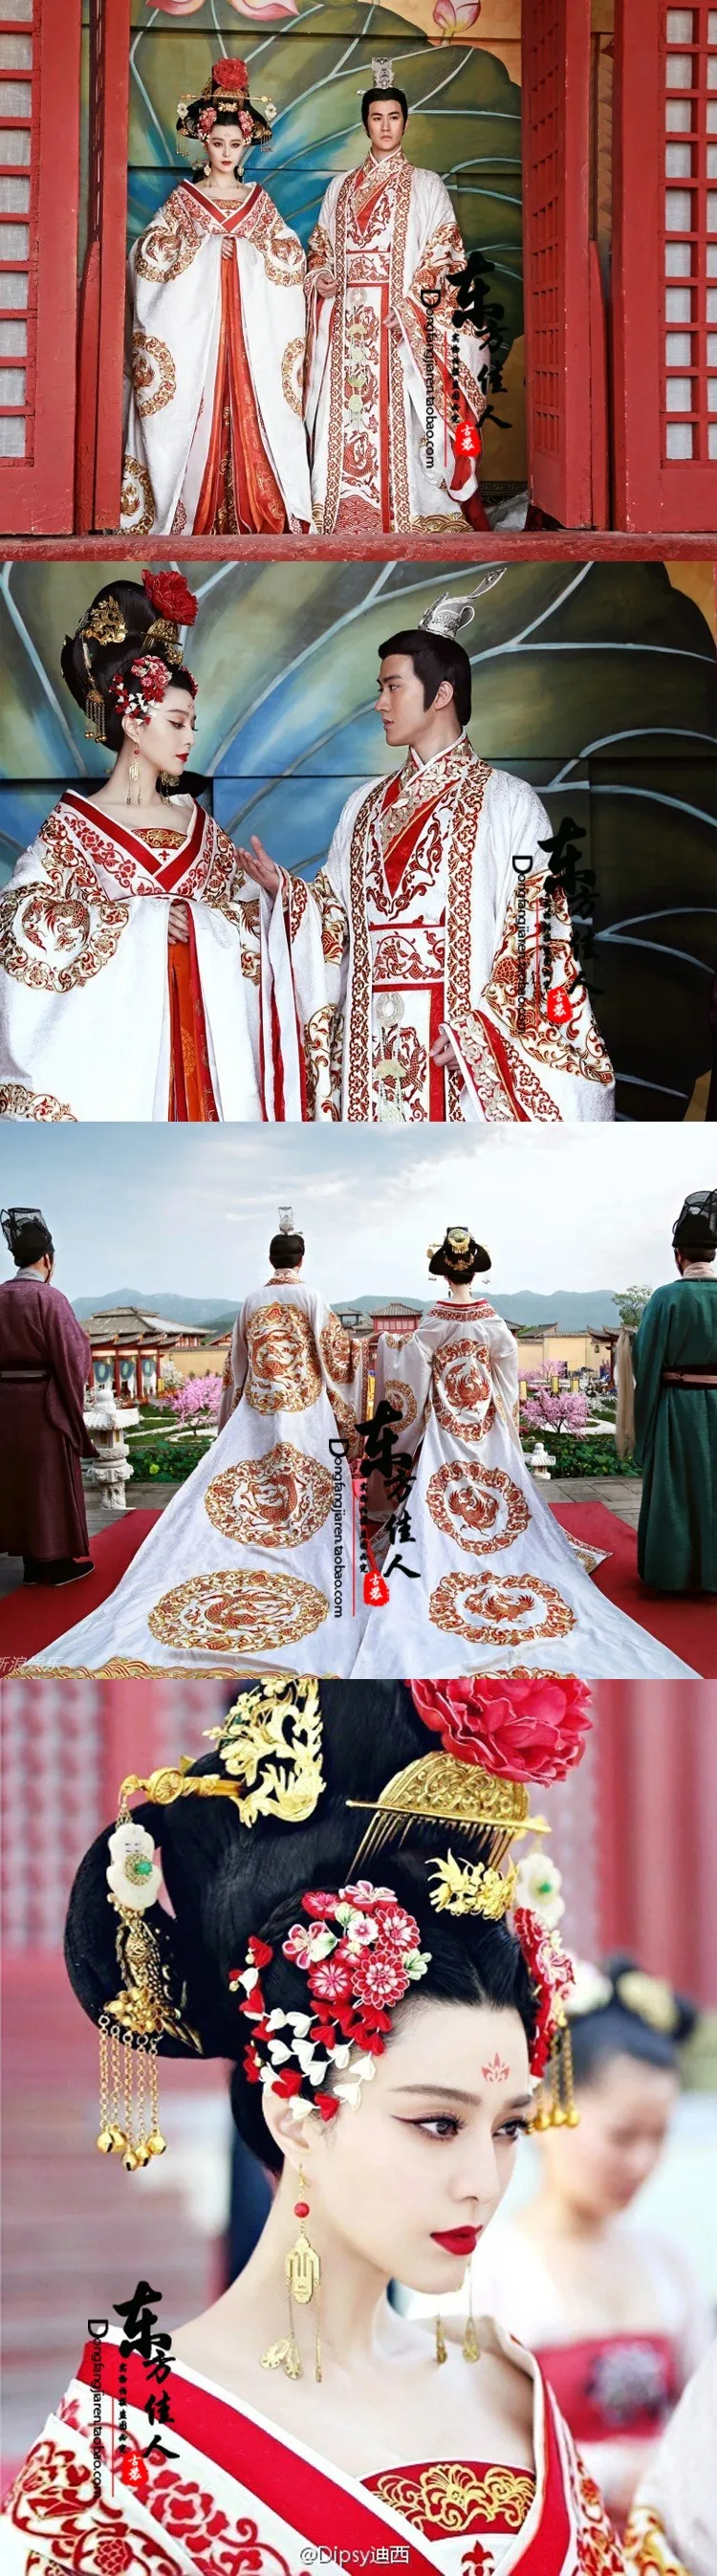 ТВ-игра великая императрица Тан-Ву зетян актриса костюм изящная вышивка с великолепным длинным хвостом императора и костюм императрицы